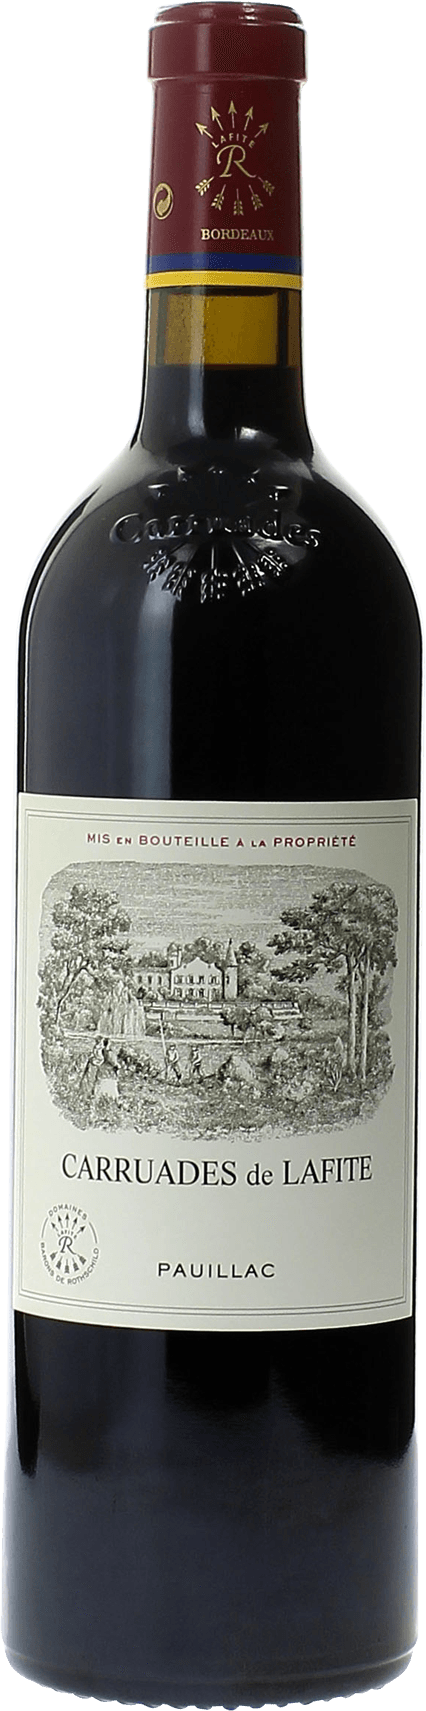 Carruades de lafite 1988 2me vin de LAFITE ROTHSCHILD Pauillac, Bordeaux rouge